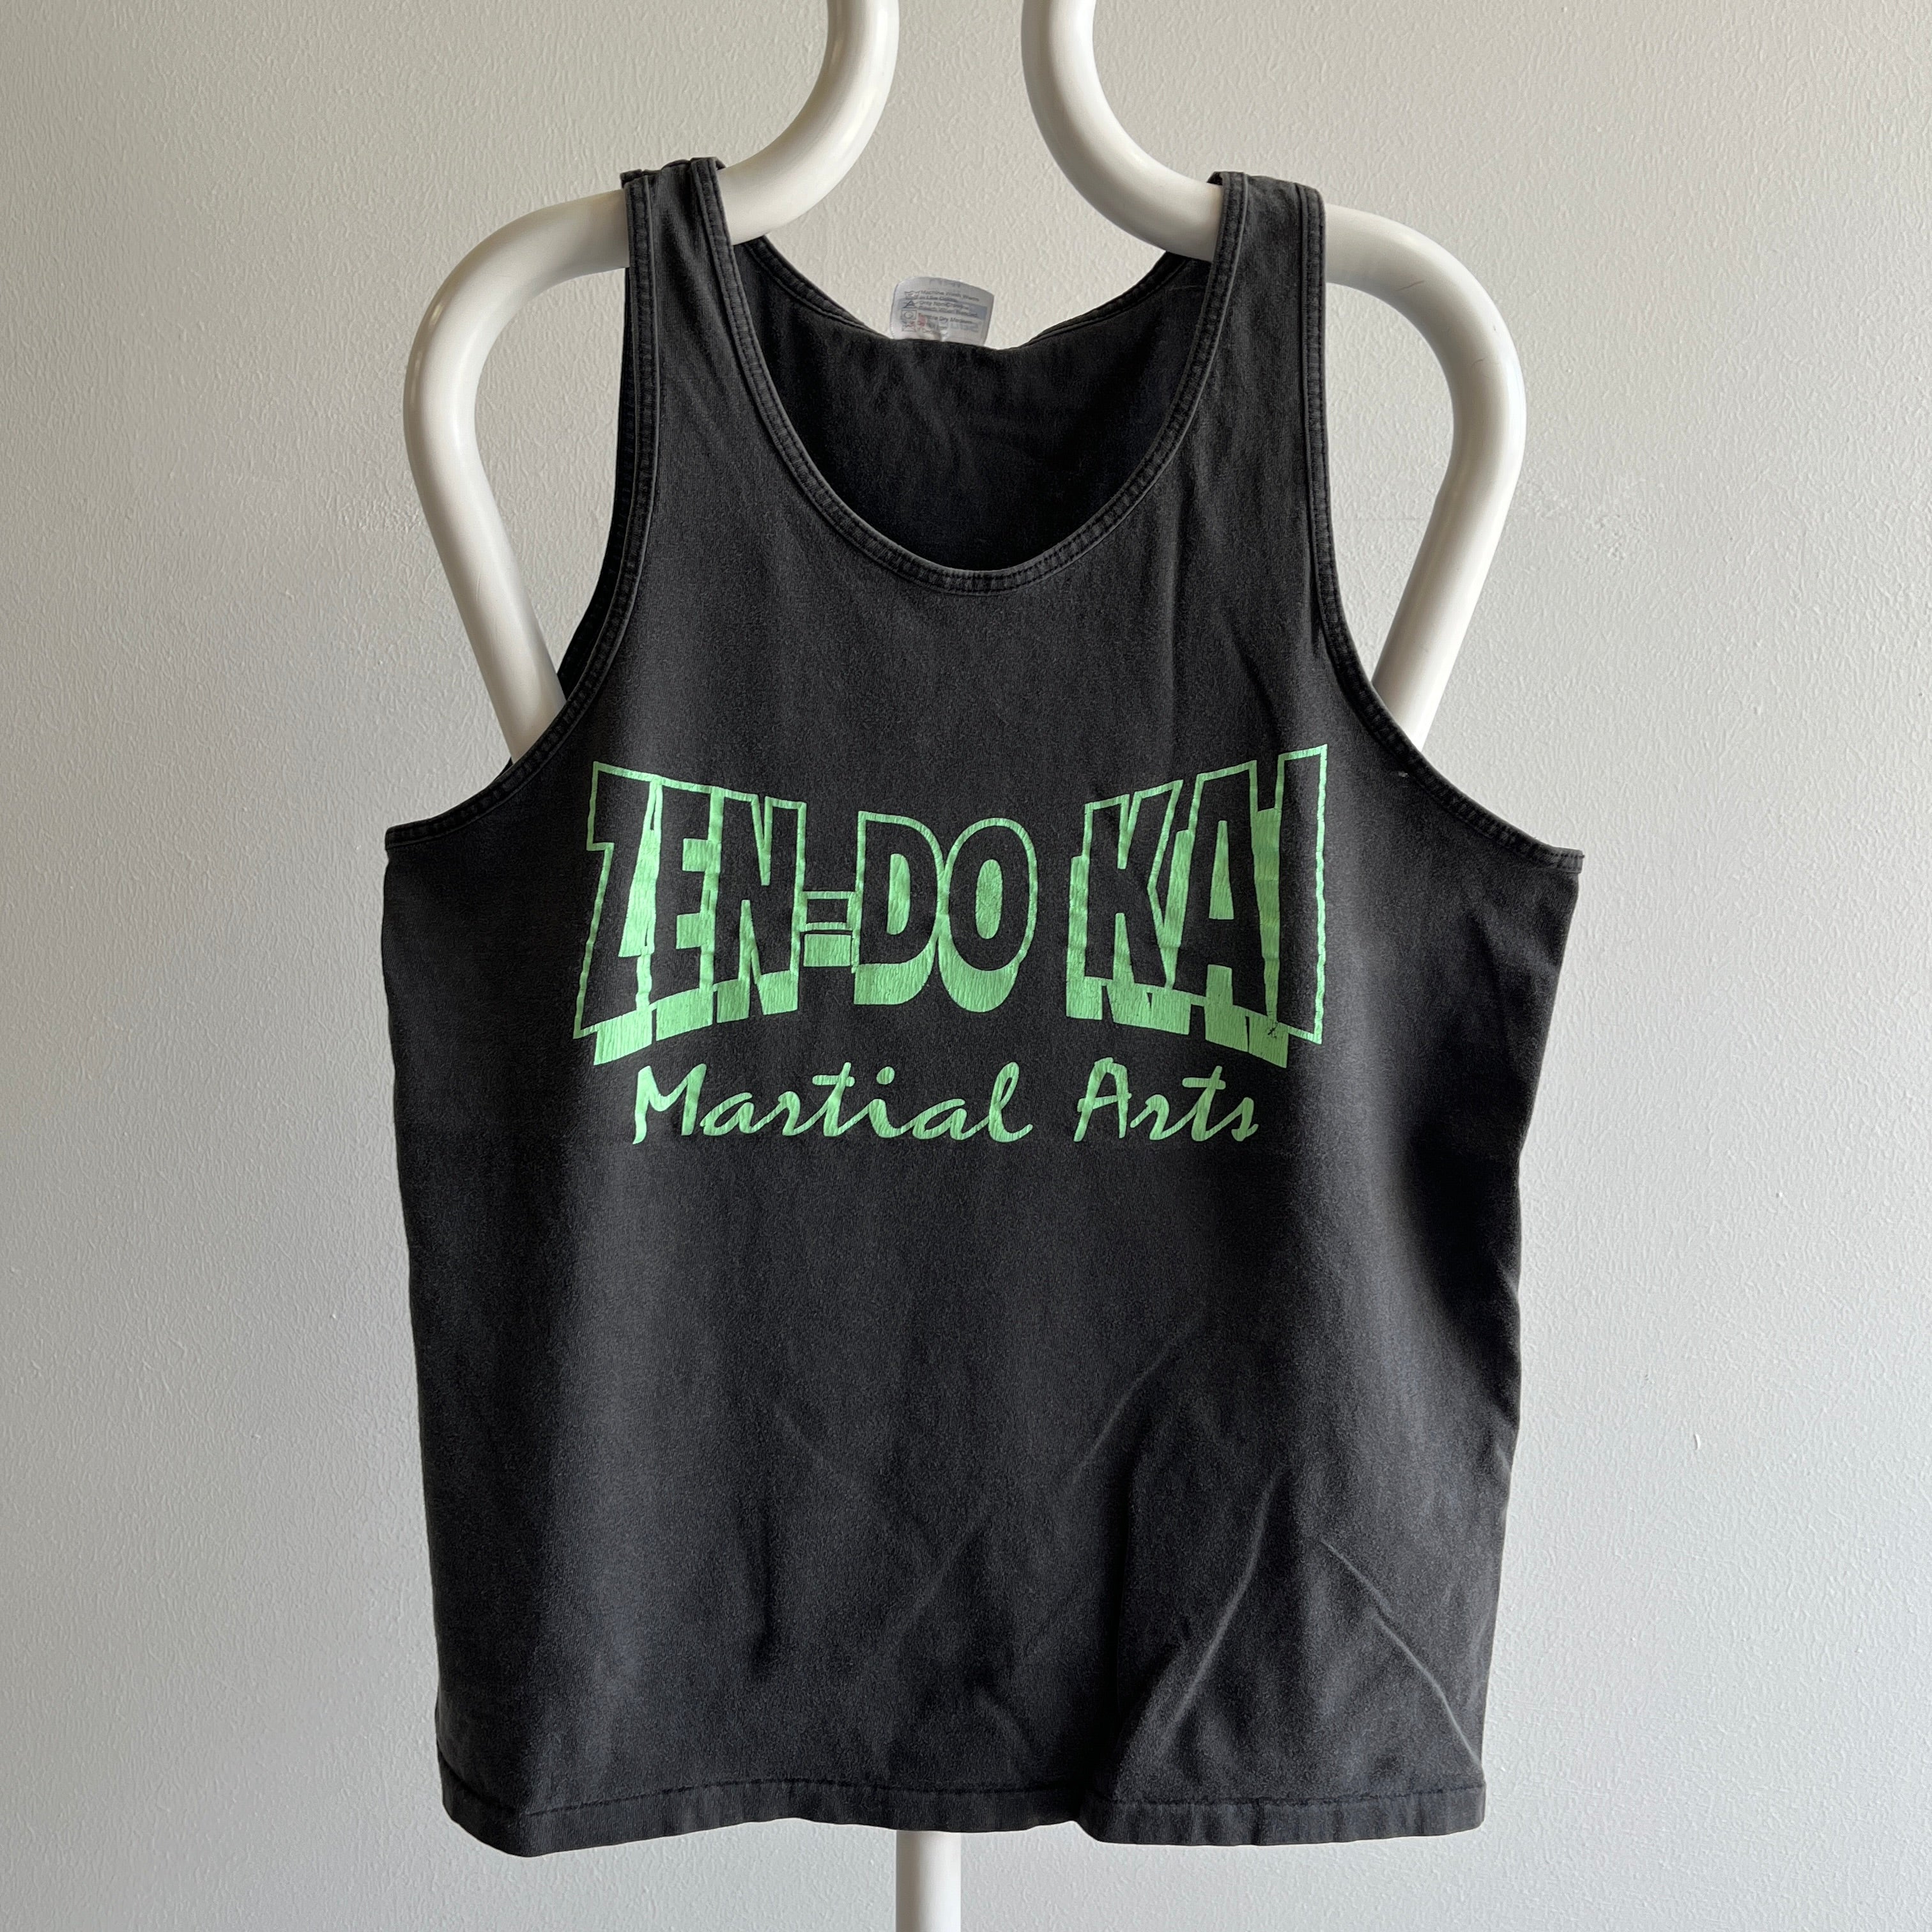 1980s Zen-Do Kai Martial Arts Faded Tank Top by Hanes